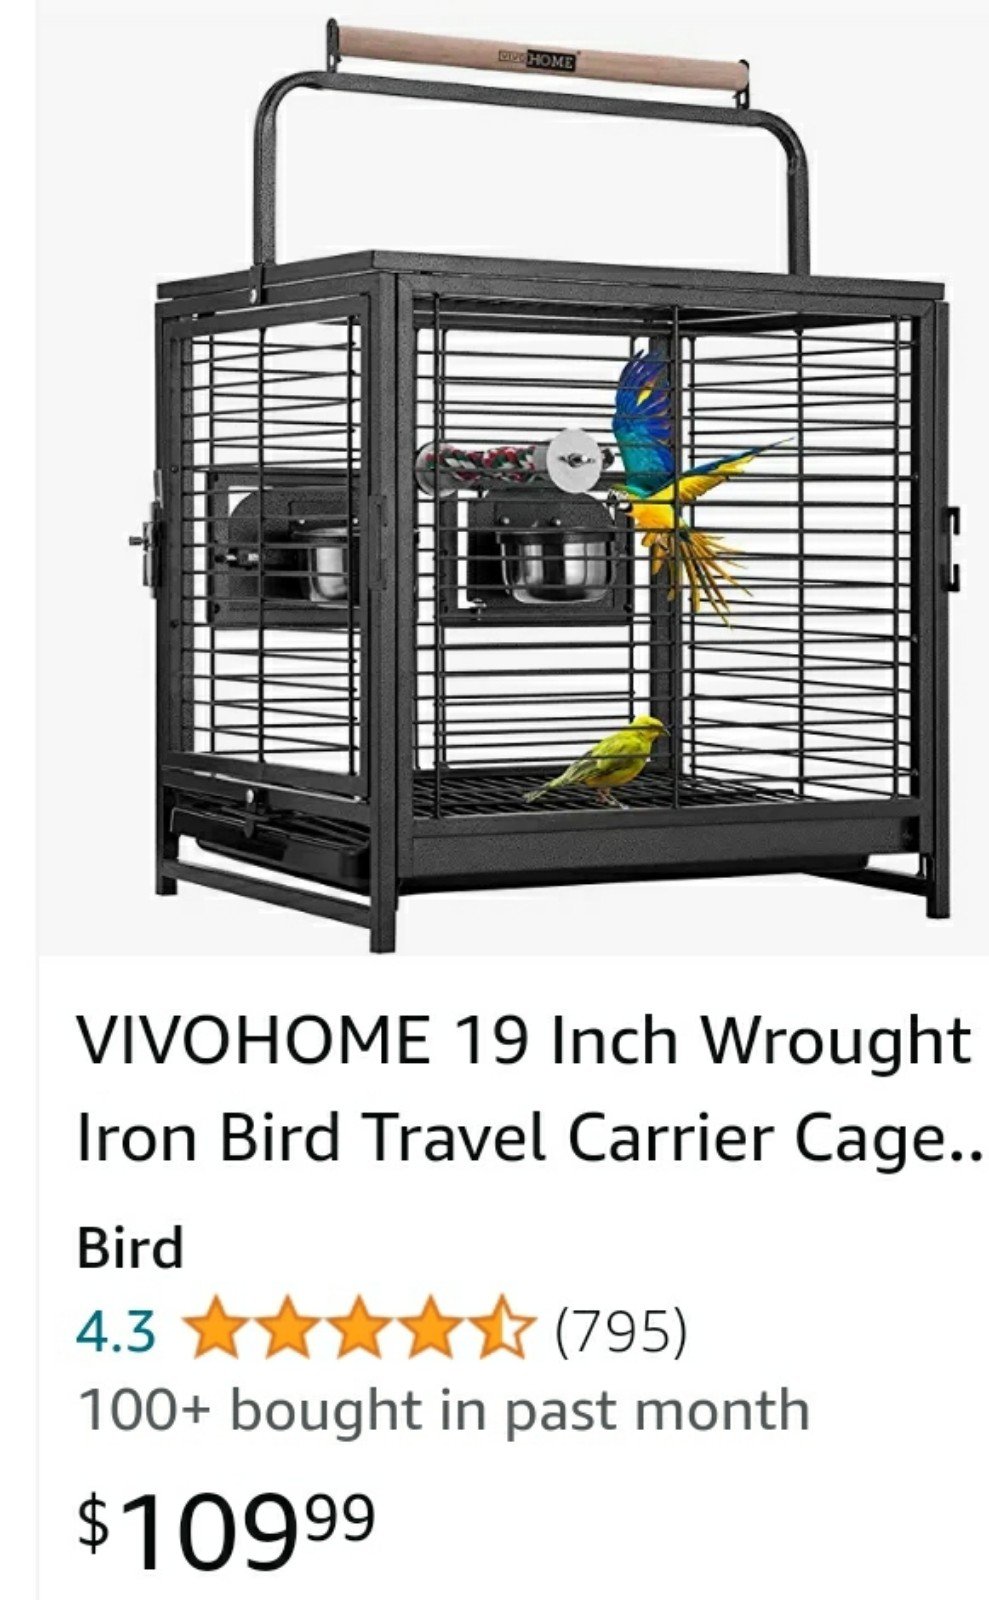 Bird travel cage bNipDTZYp